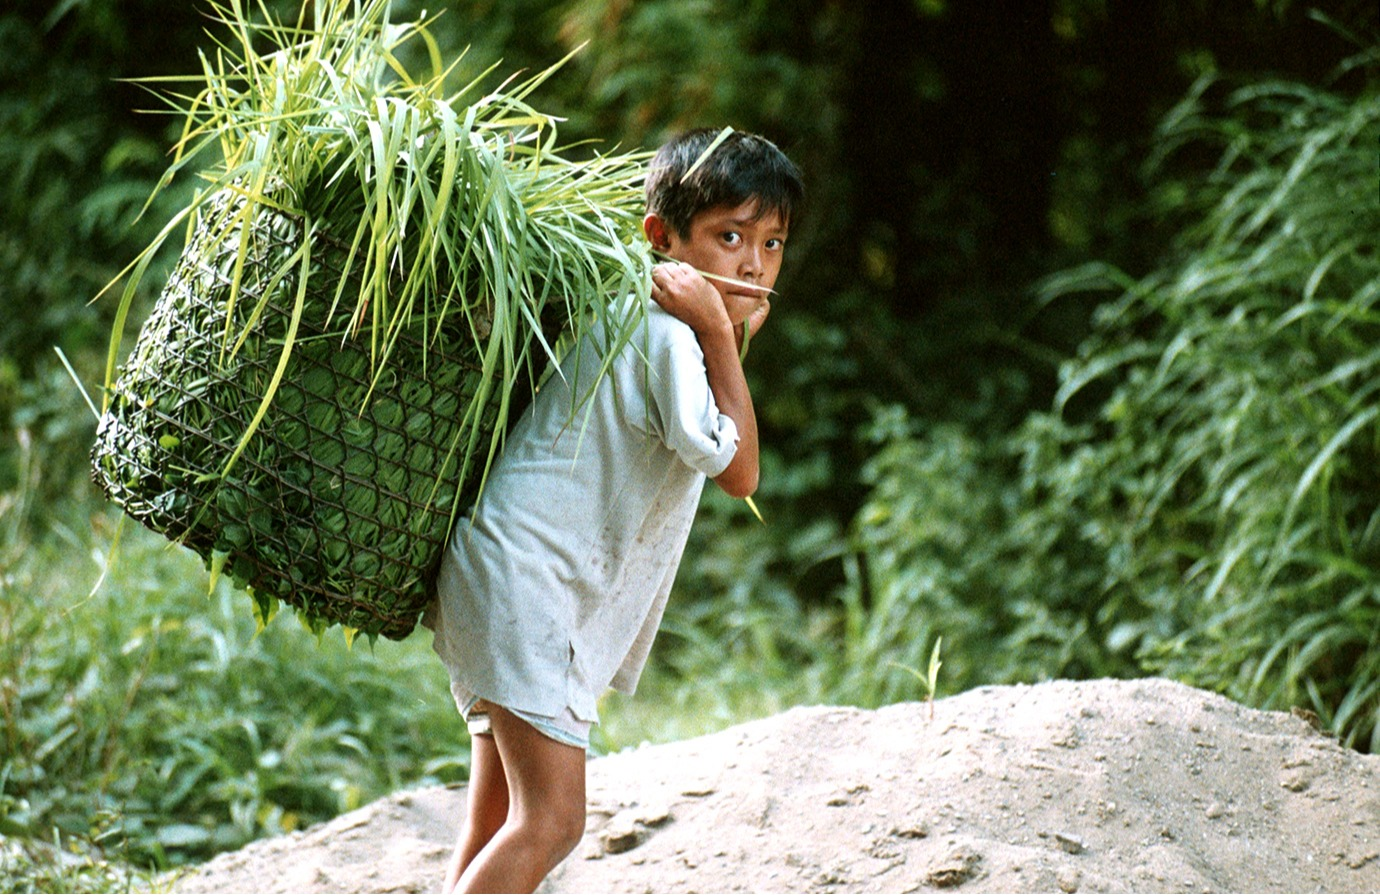 Introducción al trabajo infantil en la agricultura